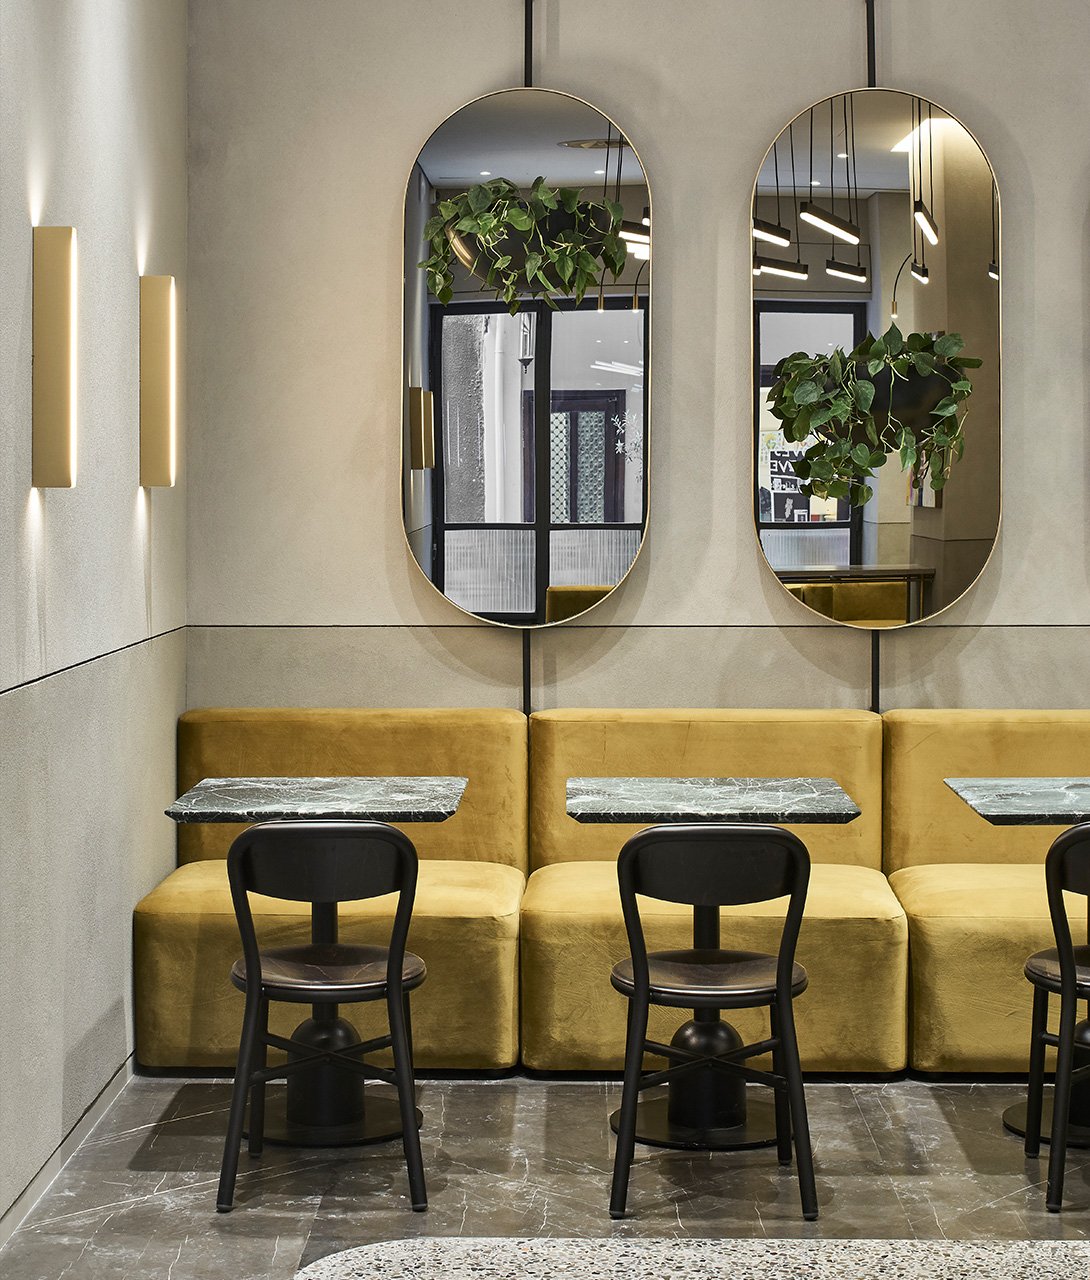 perianth-hotel-restaurant-dining-tables-interior-design-k-02-x2.jpg